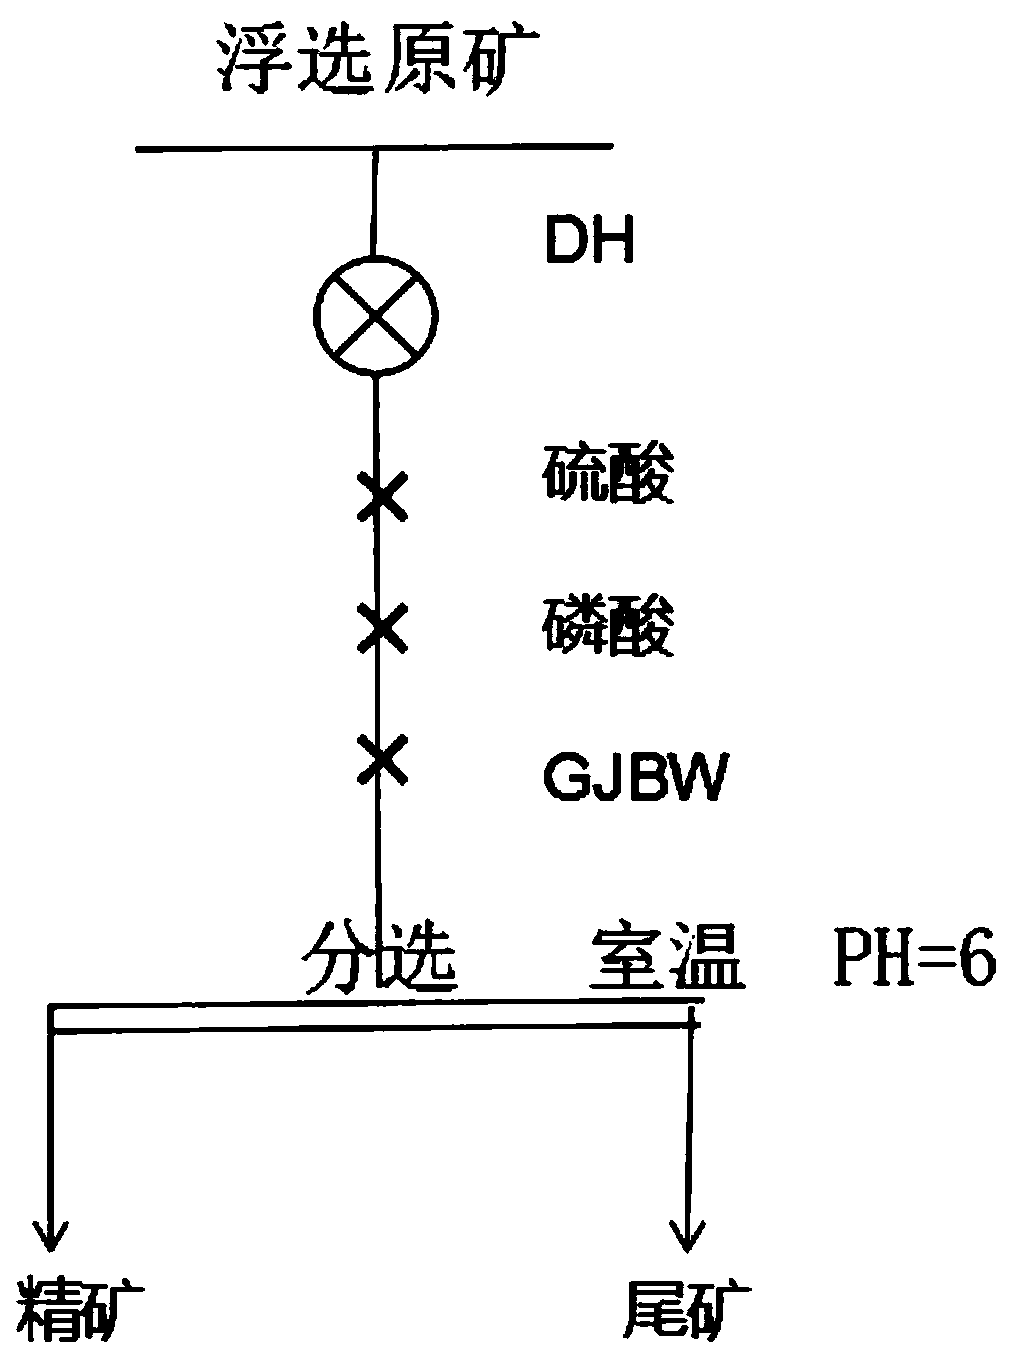 Flotation method for phosphate ore